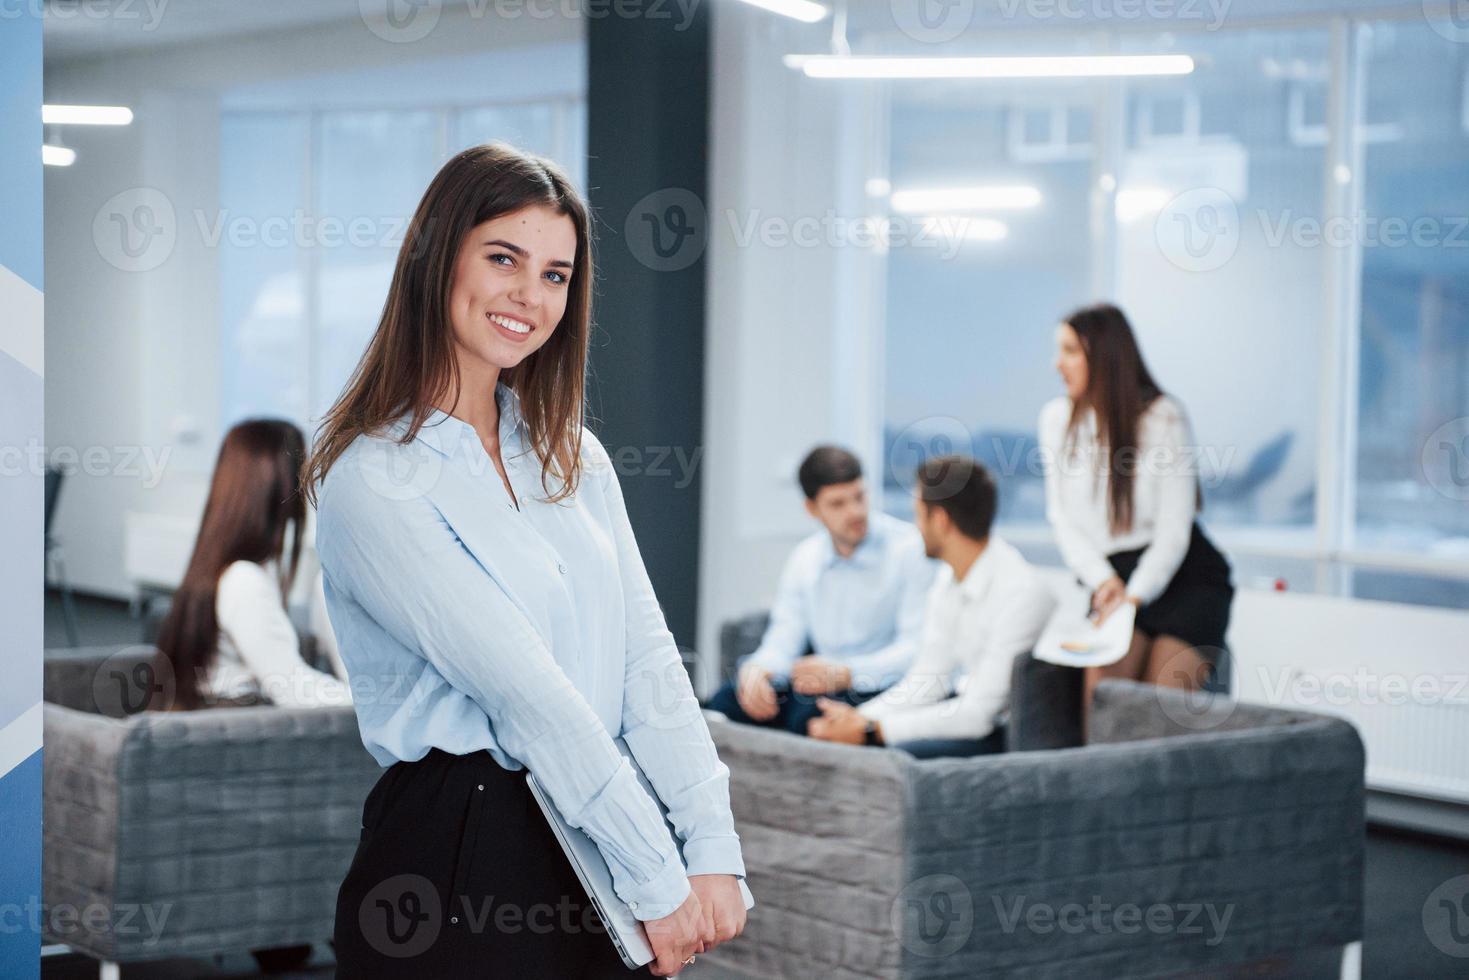 laptop nas mãos. retrato de uma jovem no escritório com funcionários no fundo foto